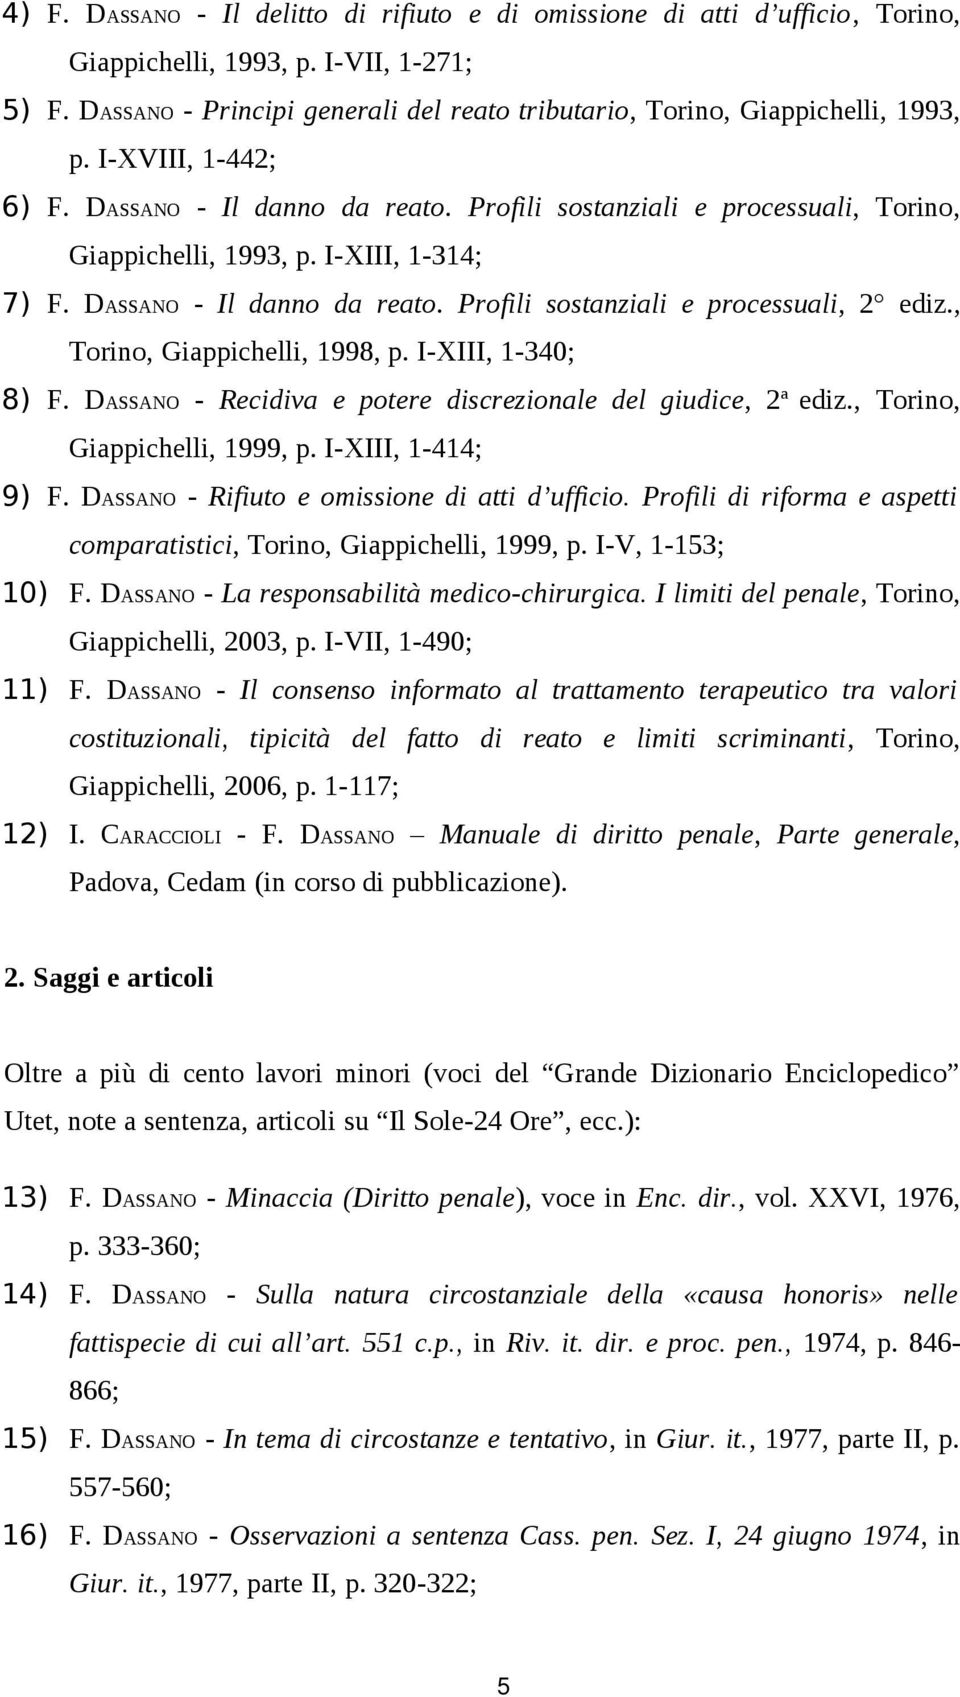 I-XIII, 1-314; 7) F. DASSANO - Il danno da reato. Profili sostanziali e processuali, 2 ediz., Torino, Giappichelli, 1998, p. I-XIII, 1-340; 8) F.